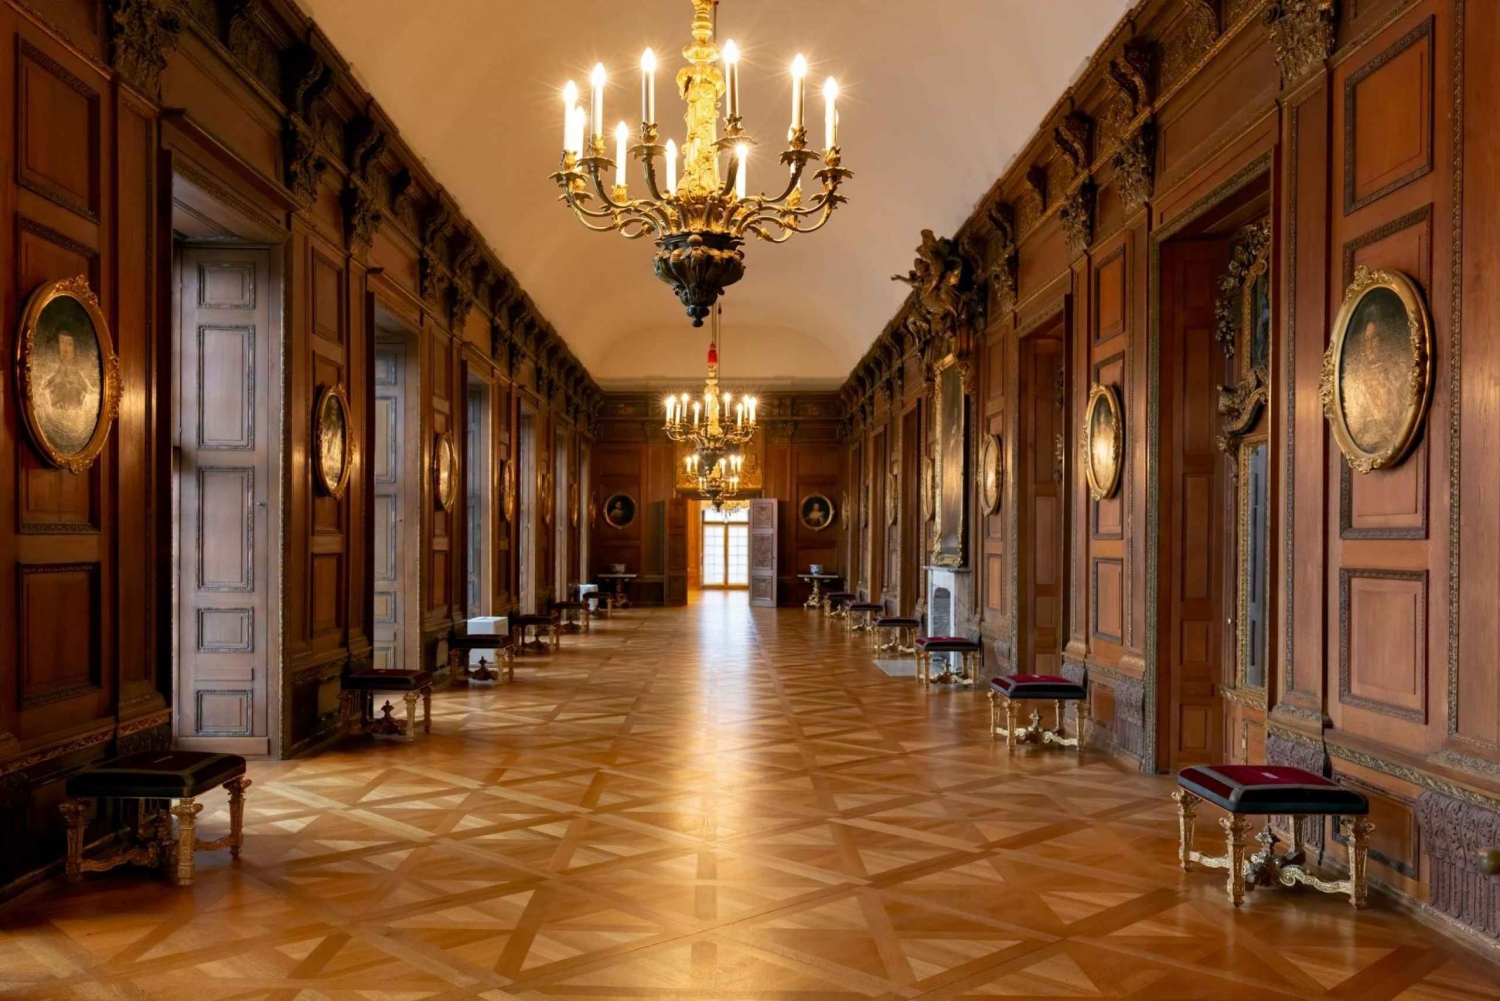 Visita privada y traslados sin esperas al Palacio de Charlottenburg